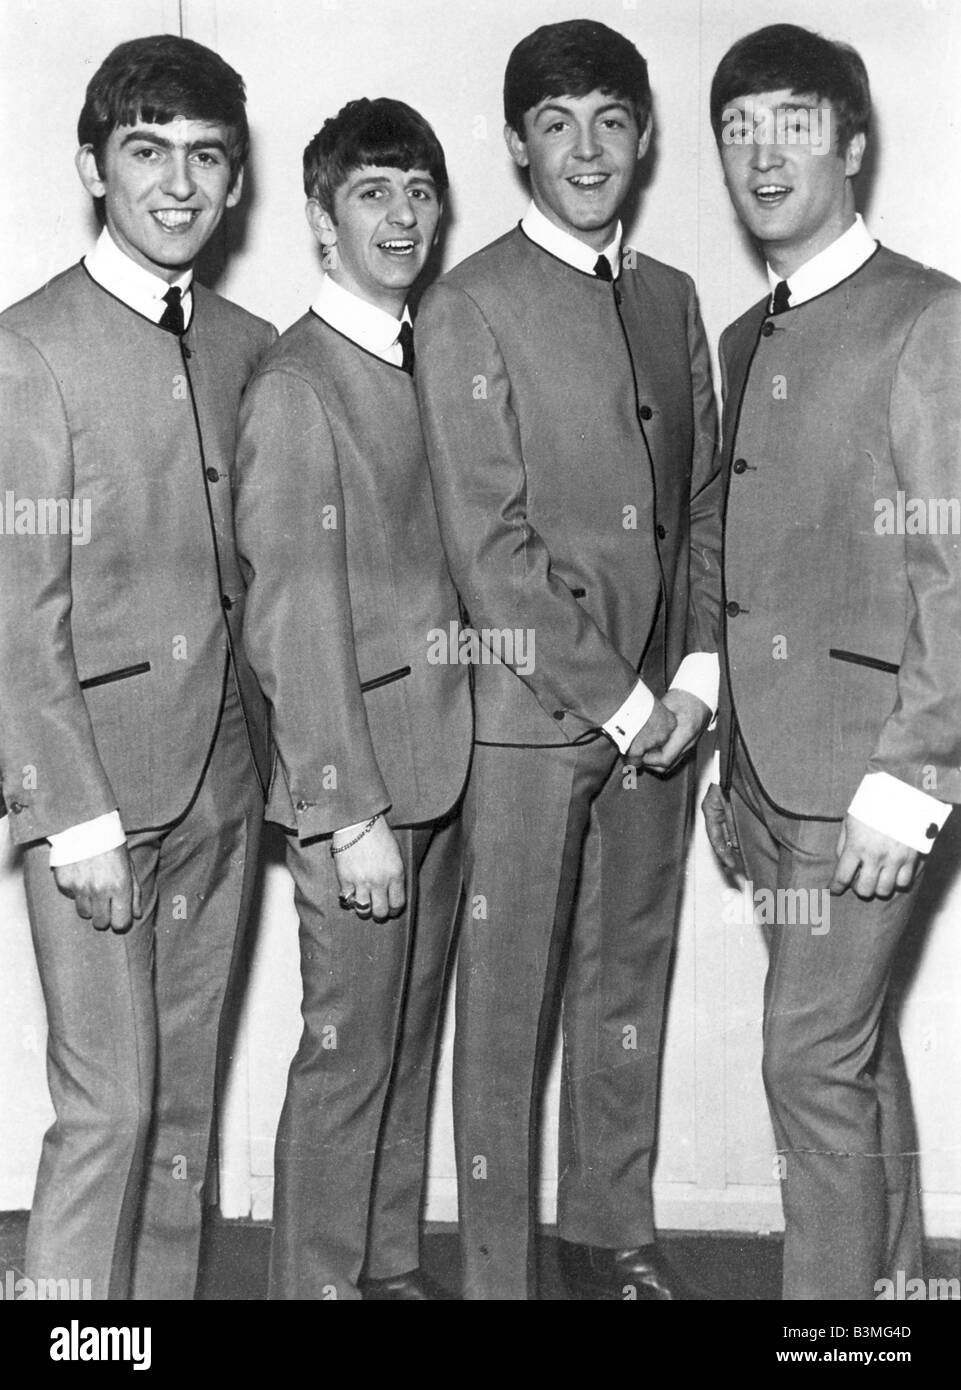 Le célèbre Beatles en costumes gris en 1963 Banque D'Images